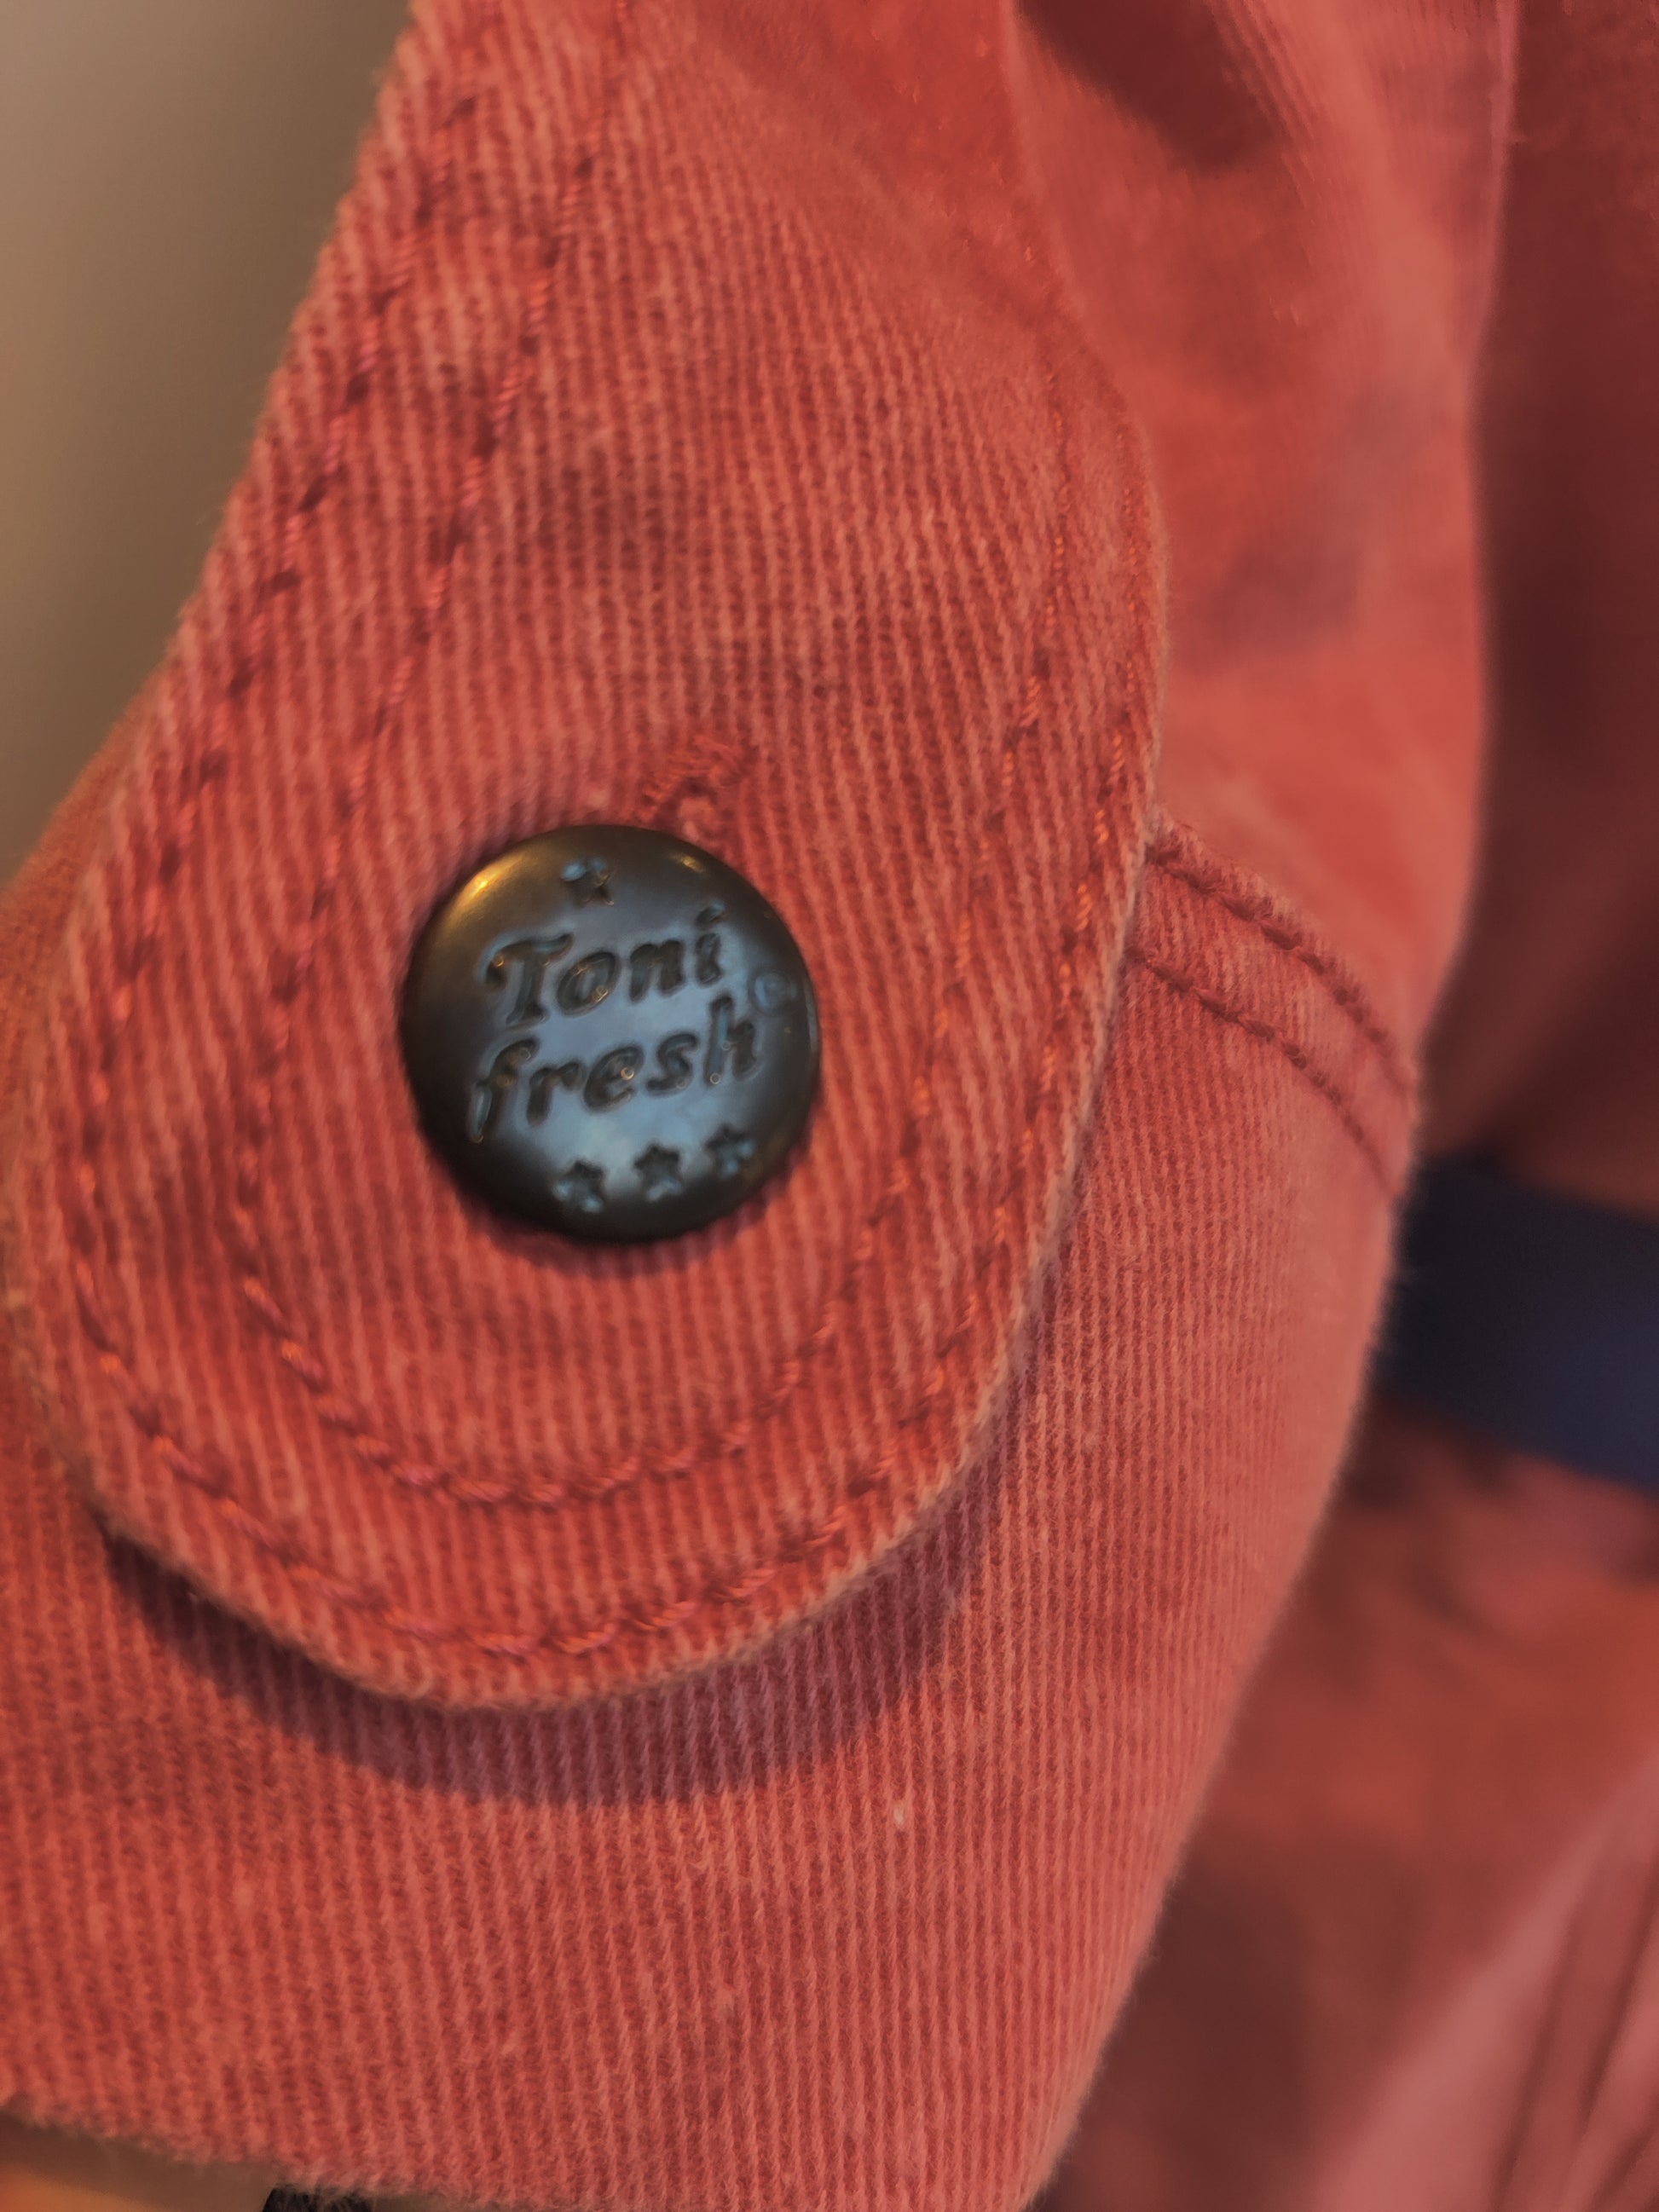 Original button detail on denim jacket